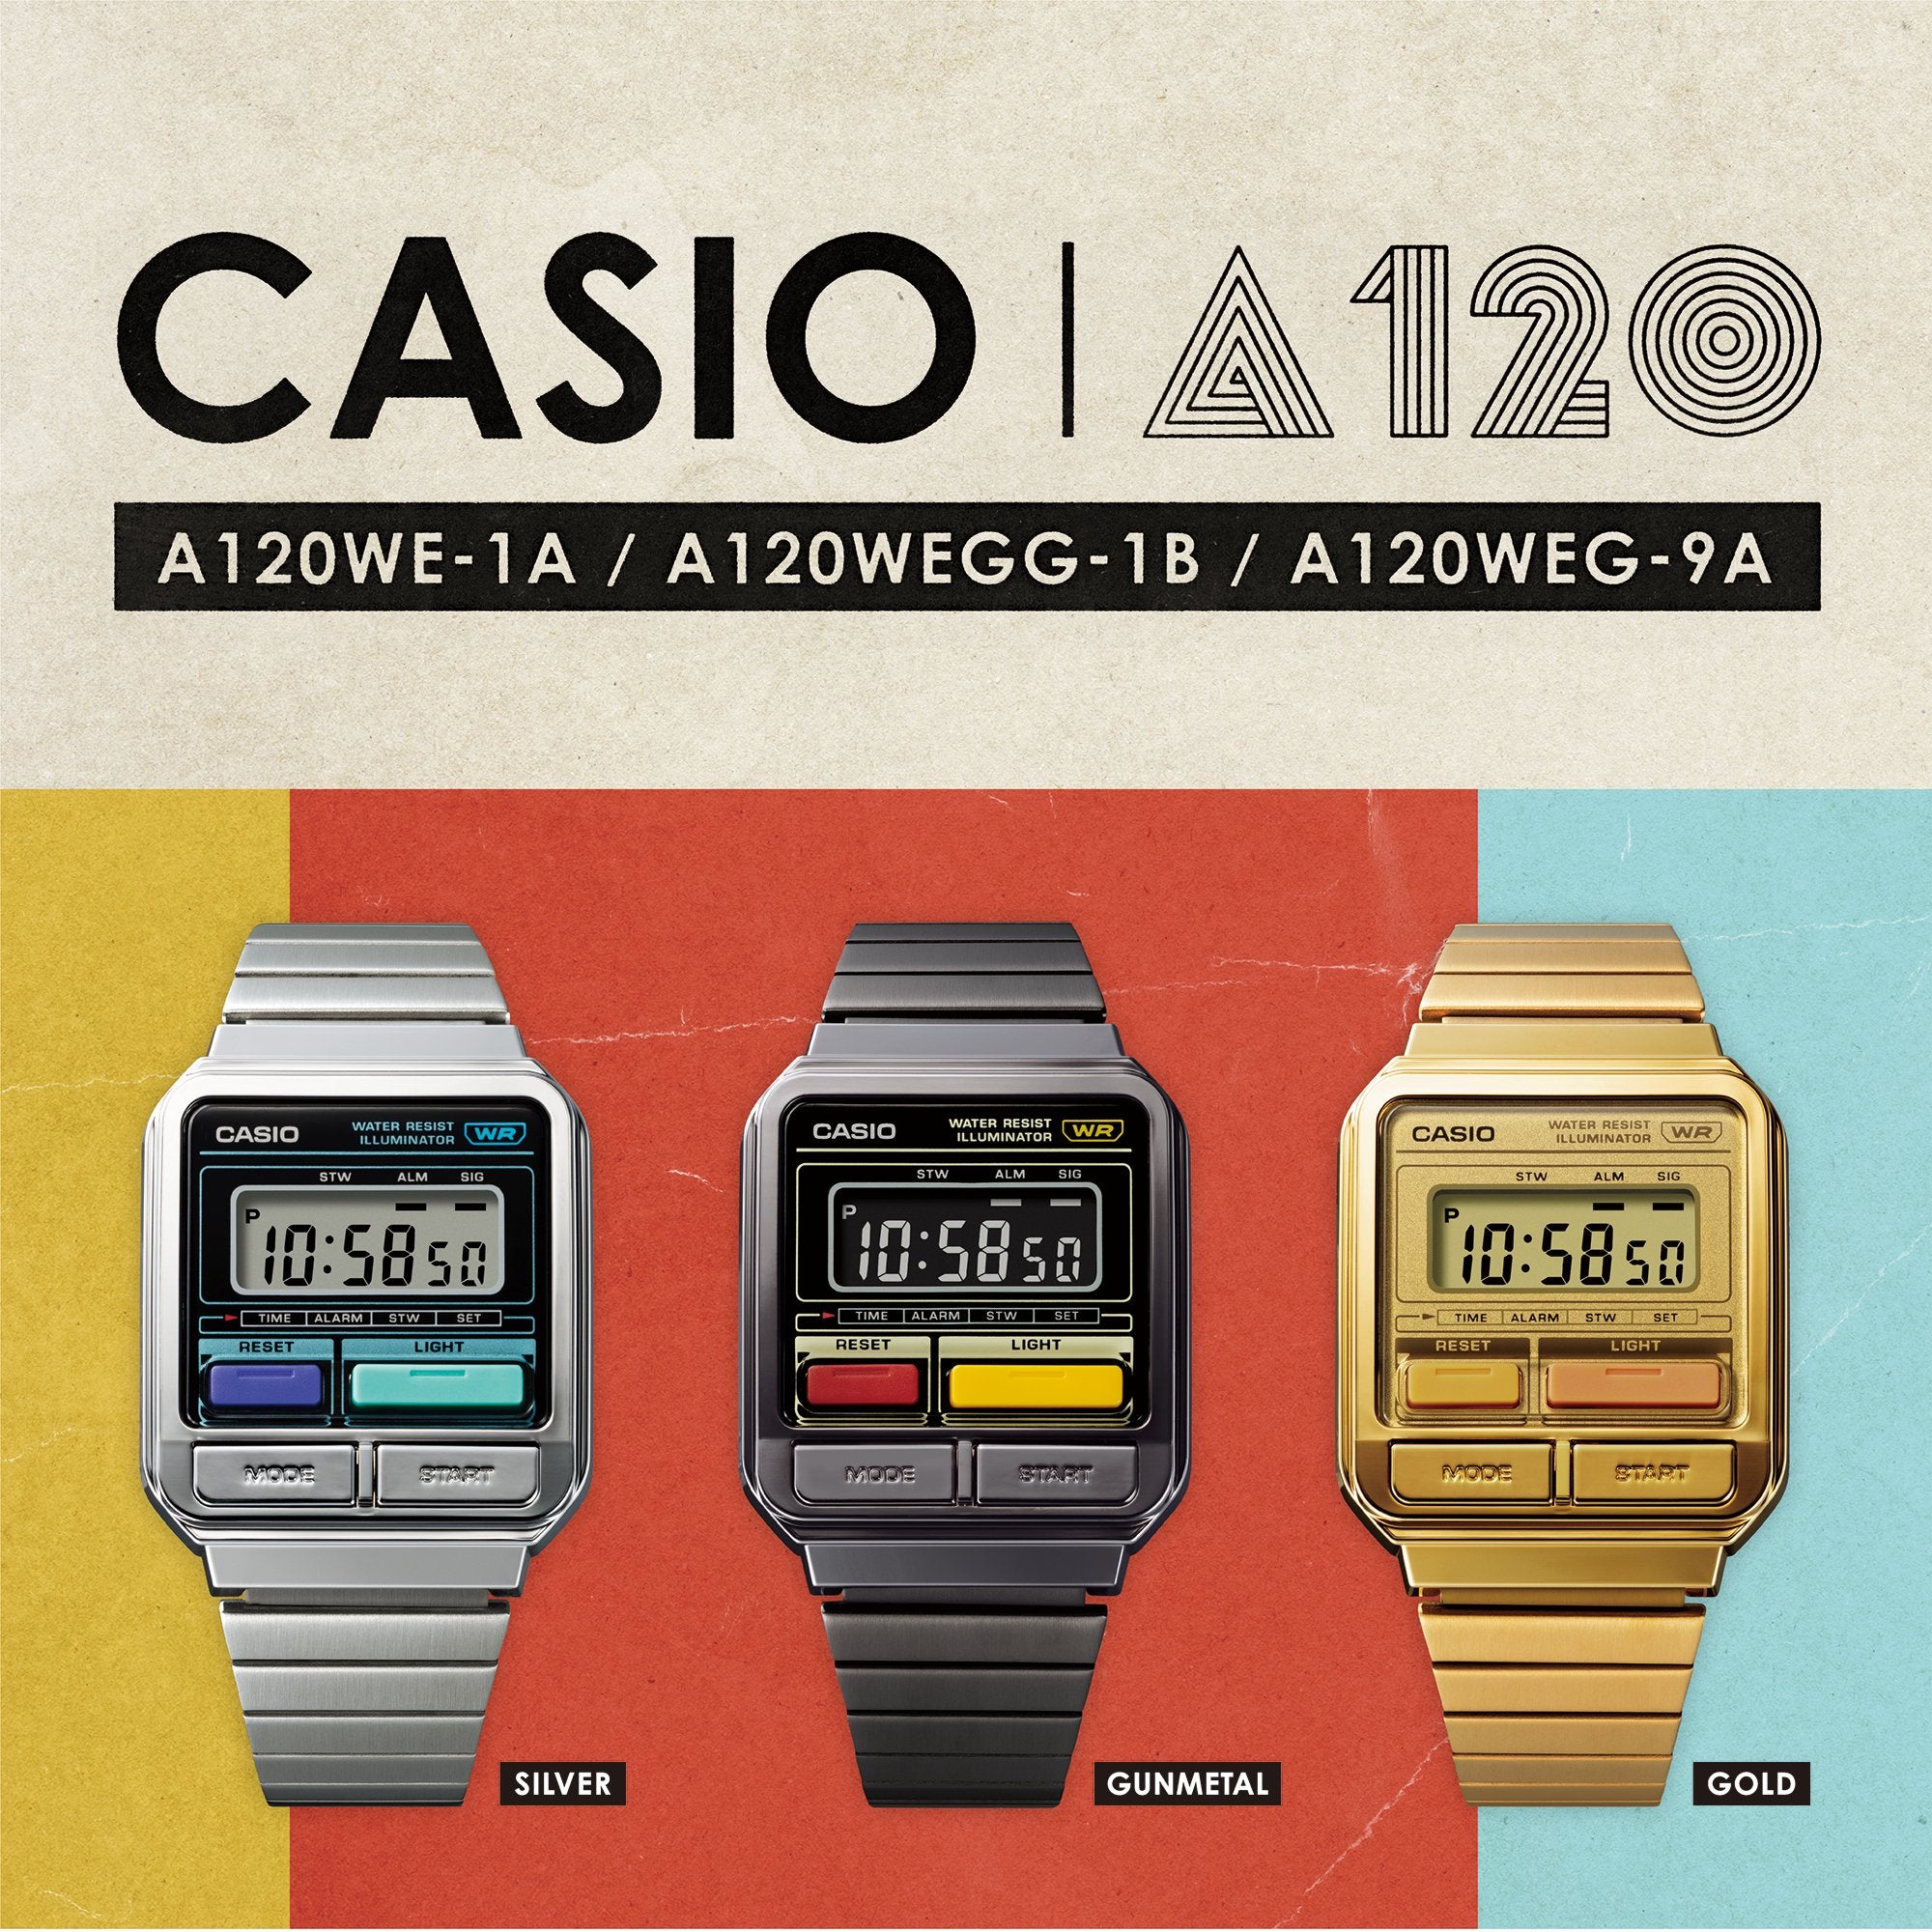 Plated Watch CASIO Vintage Grey Chrome A120WEGG-1B